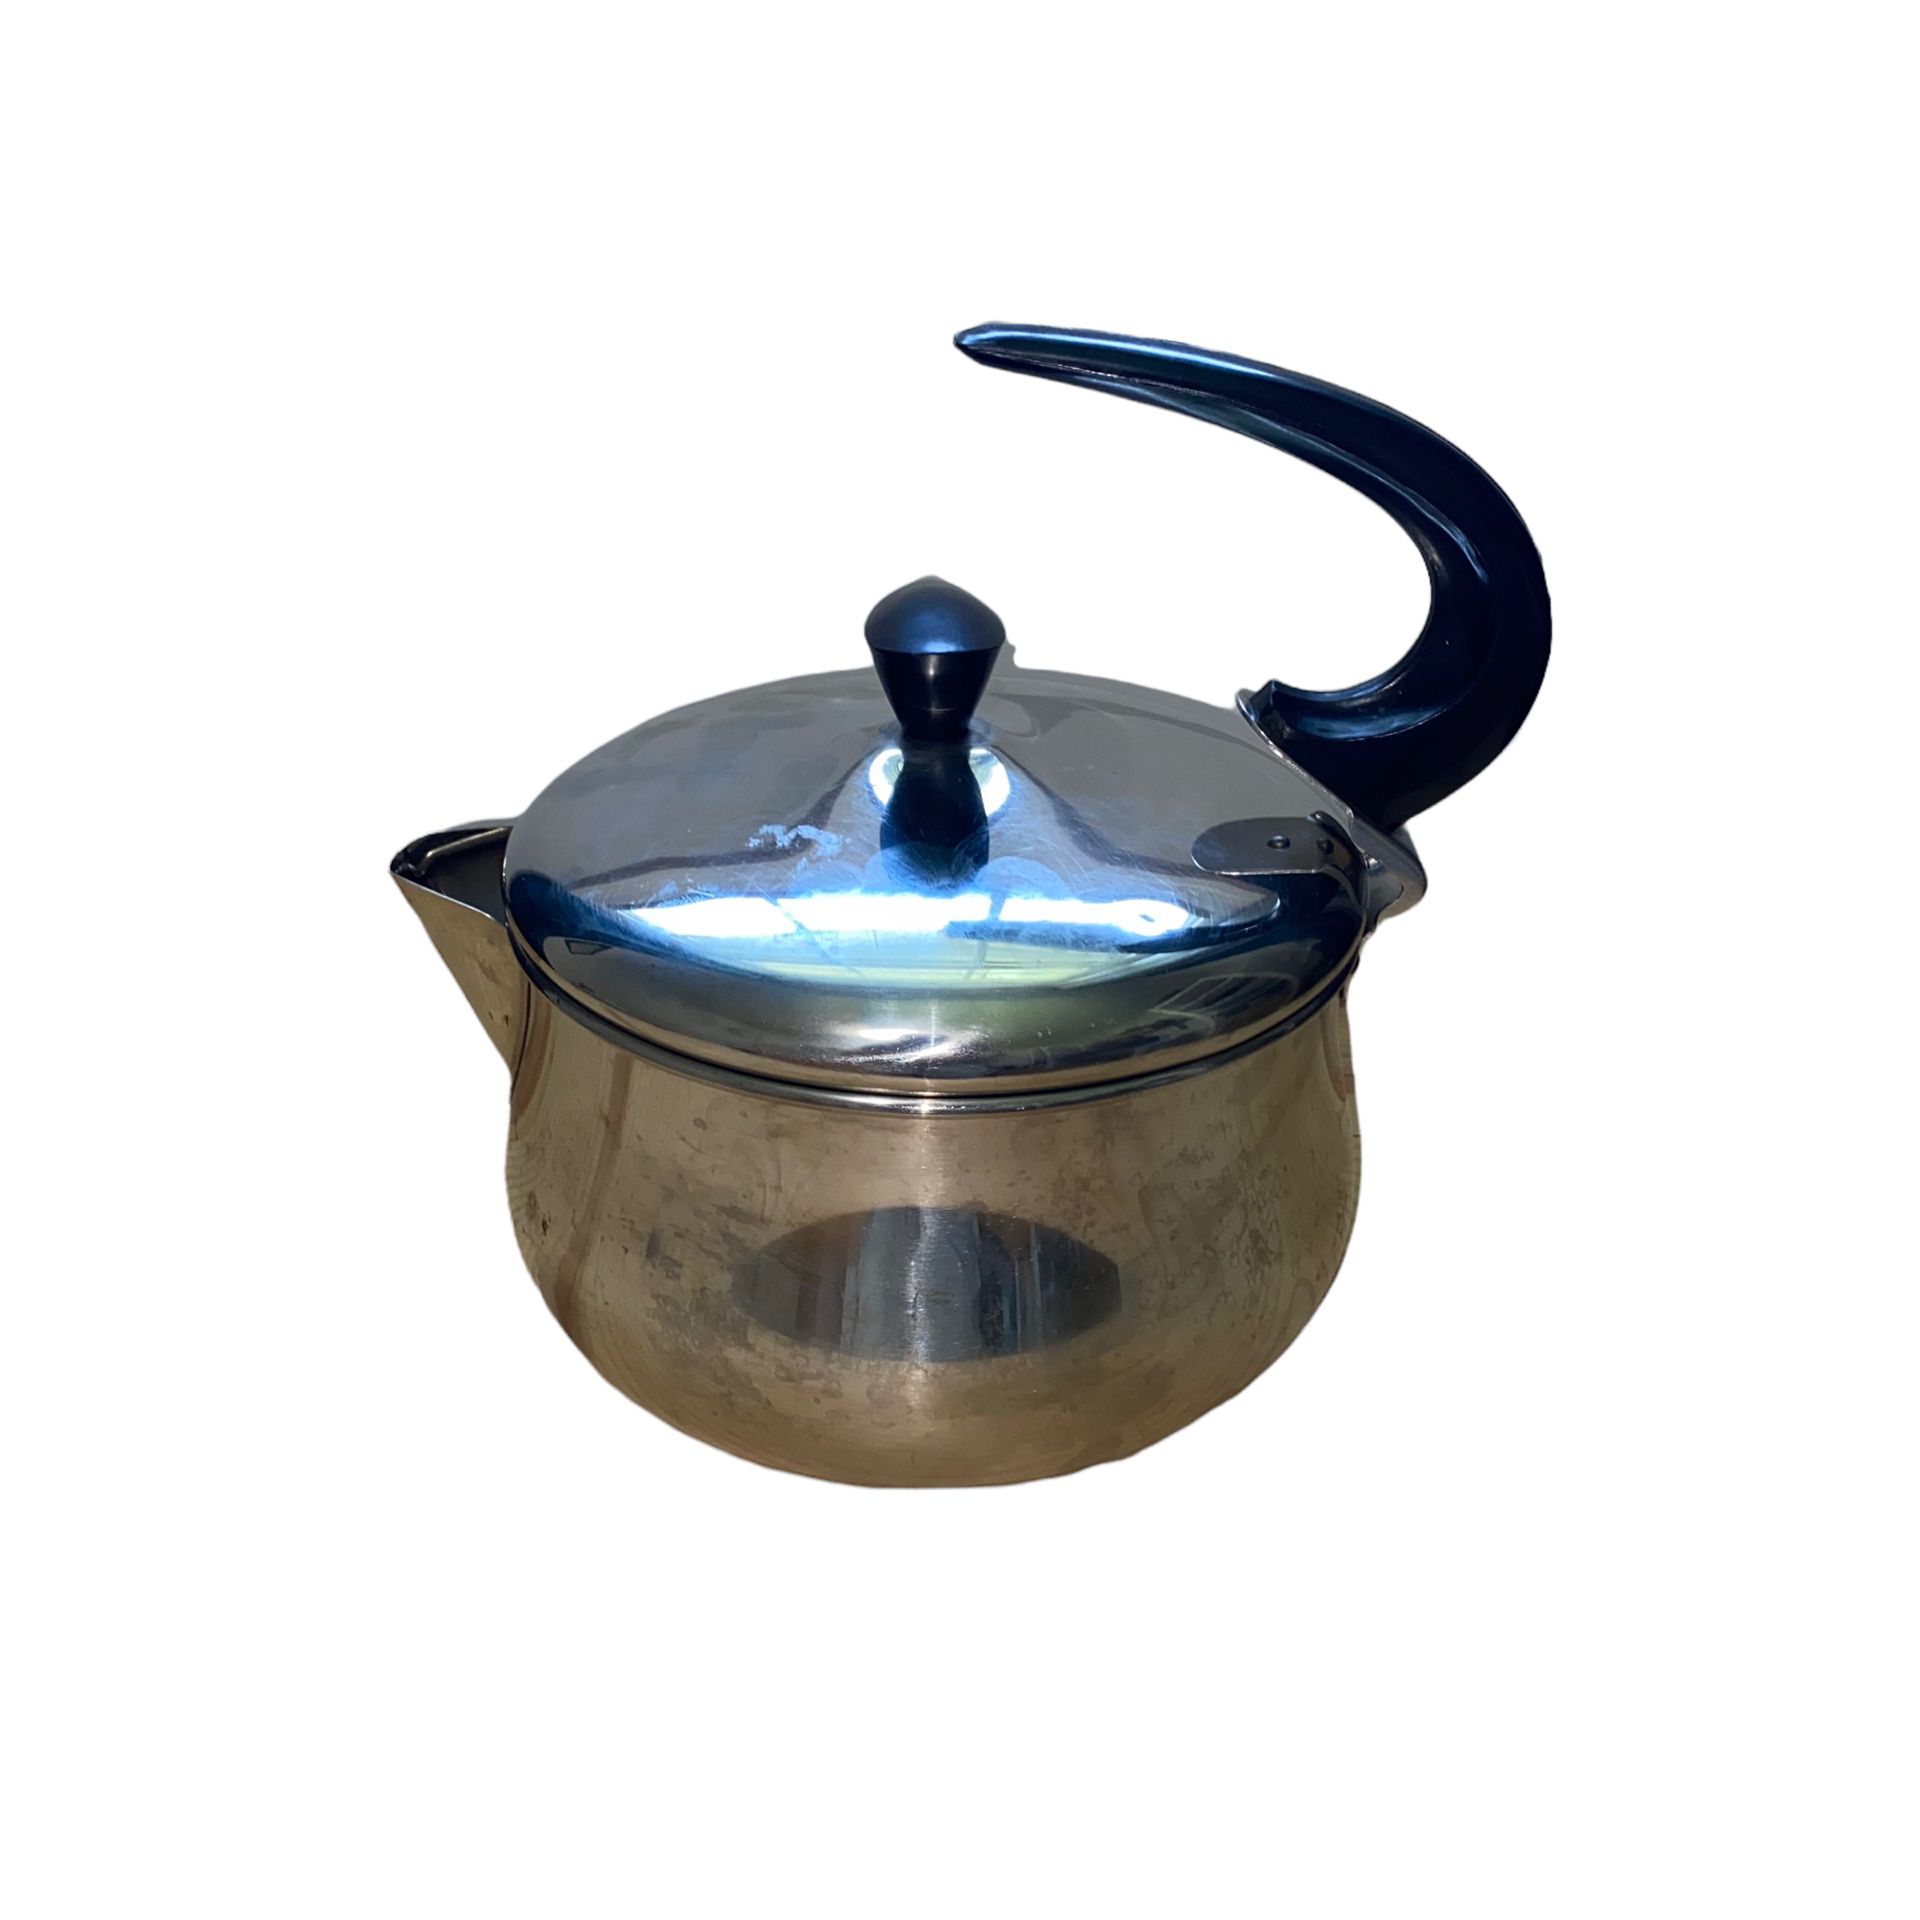 Farberware Tea Kettle Vintage Stainless Steel Tea Kettle Tea Pot